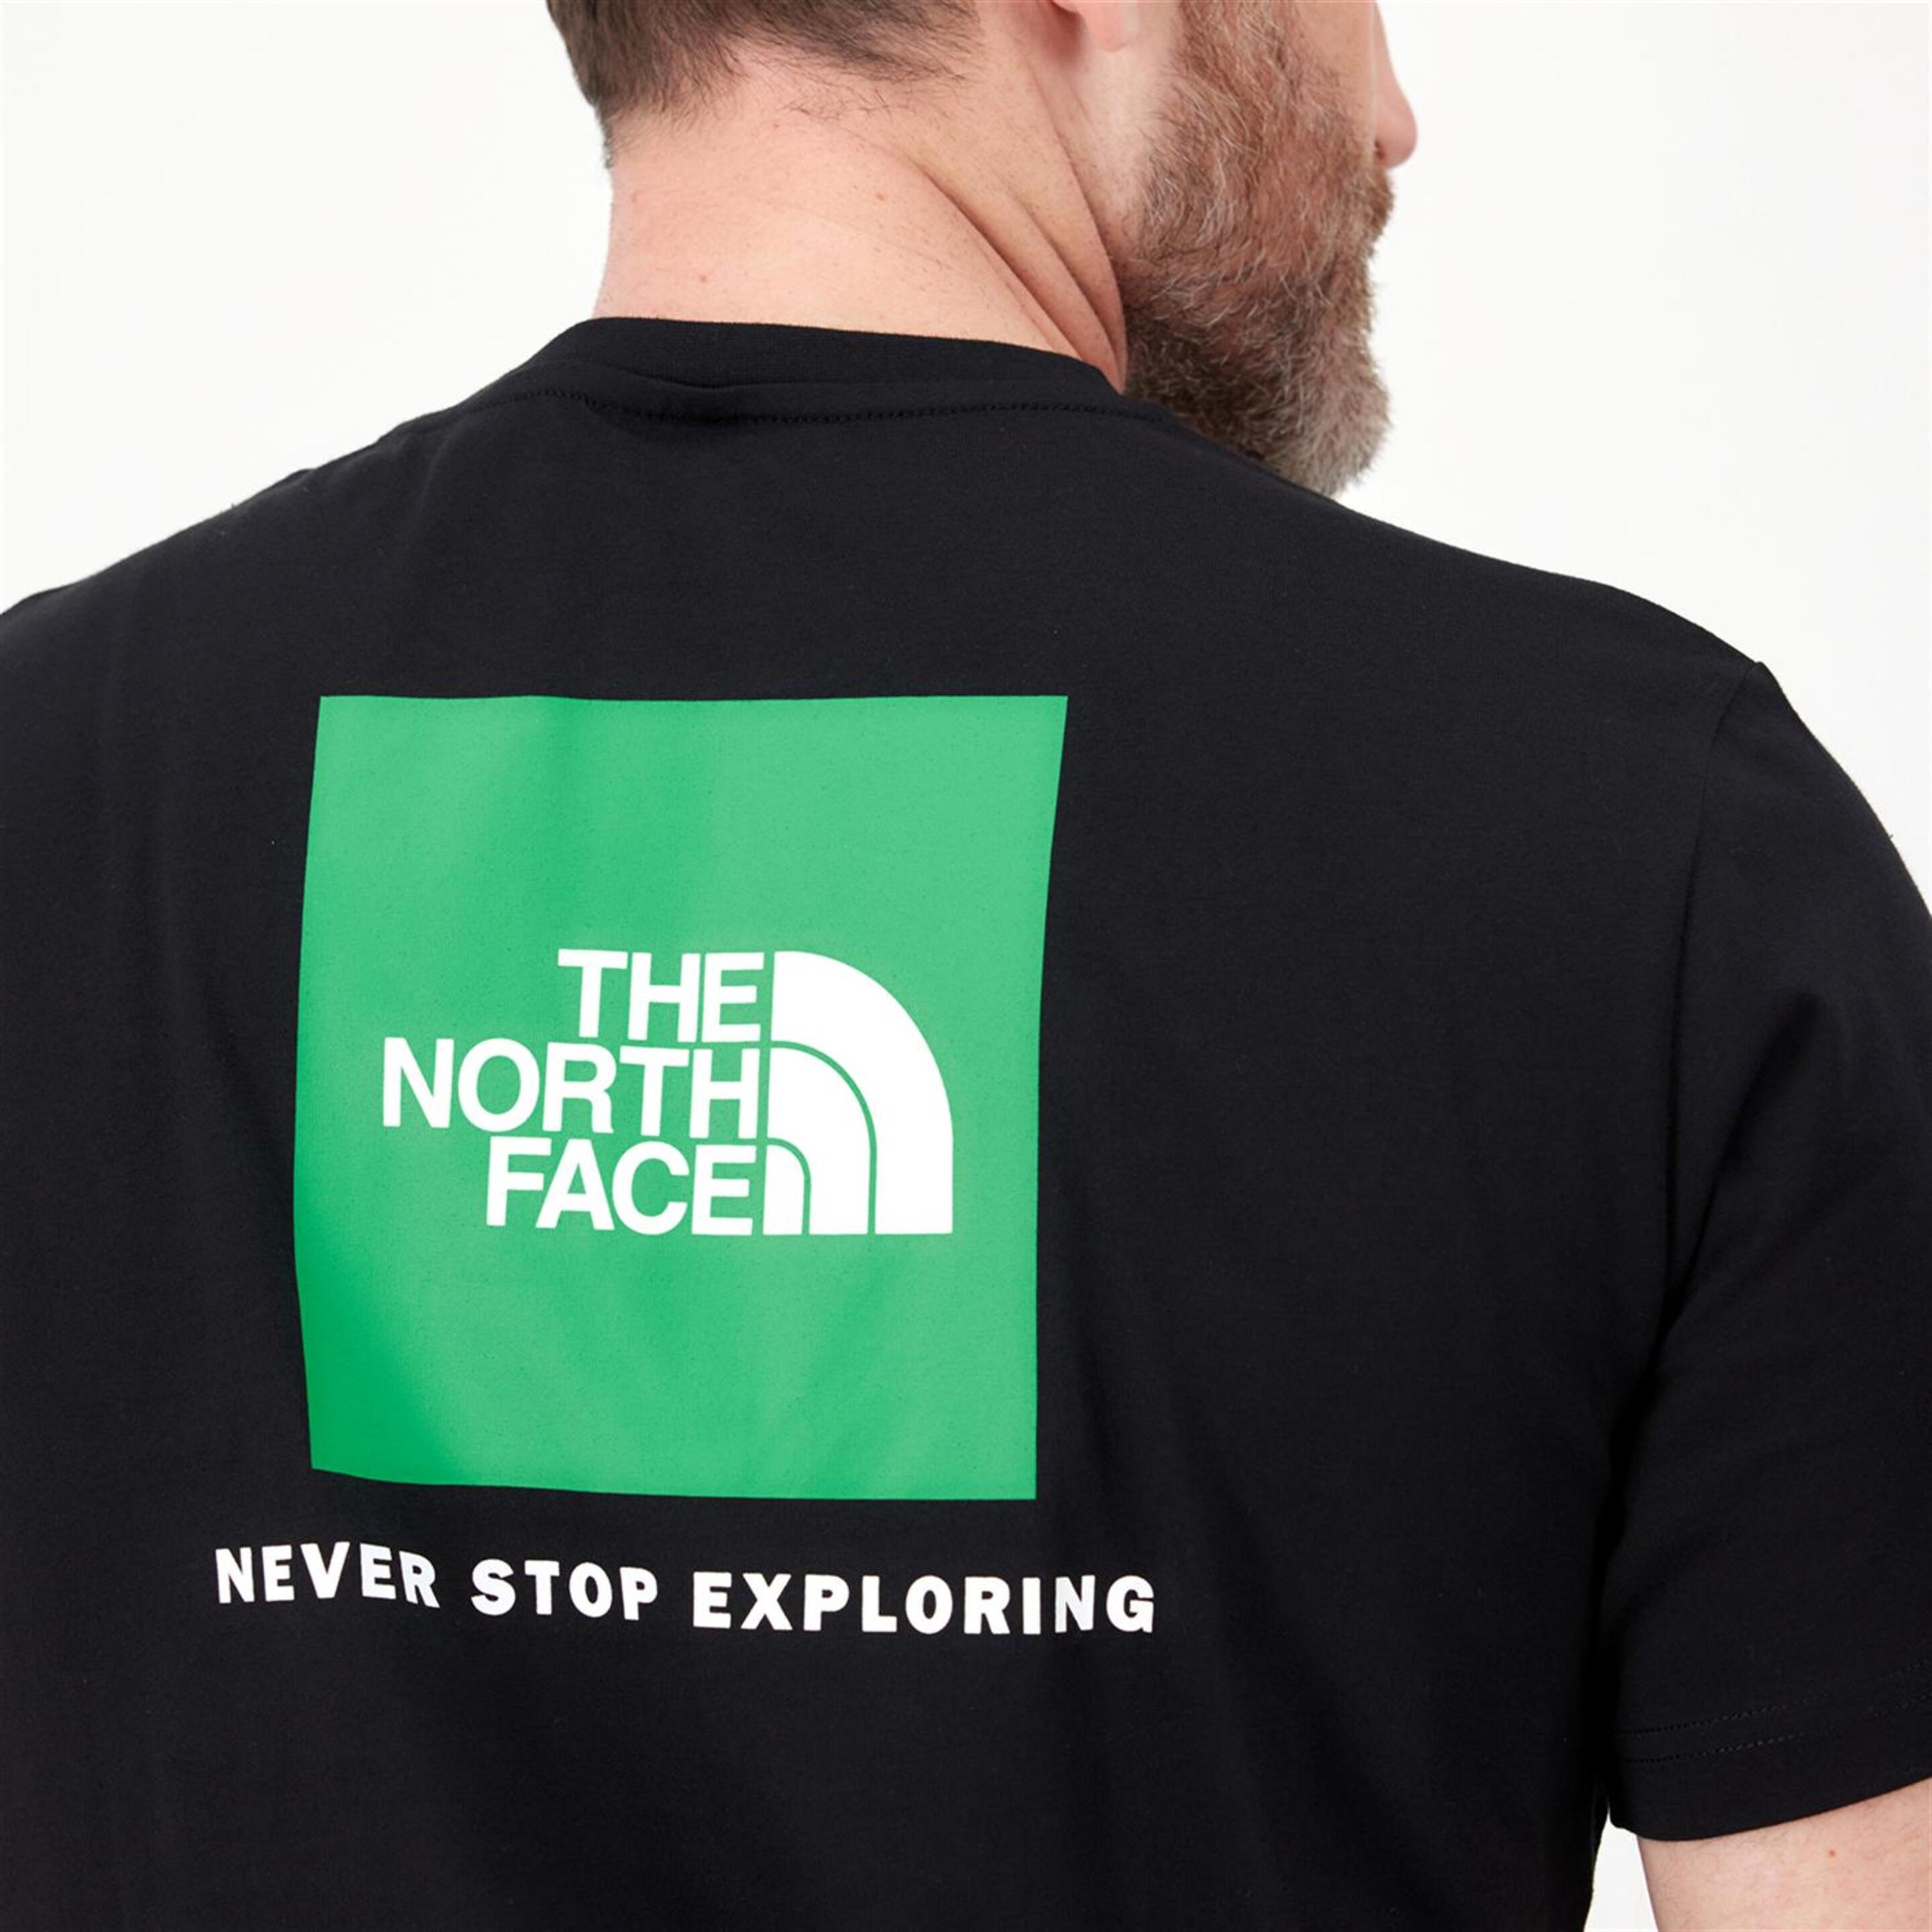 The North Face Redbox - Negro - Camiseta Montaña Hombre